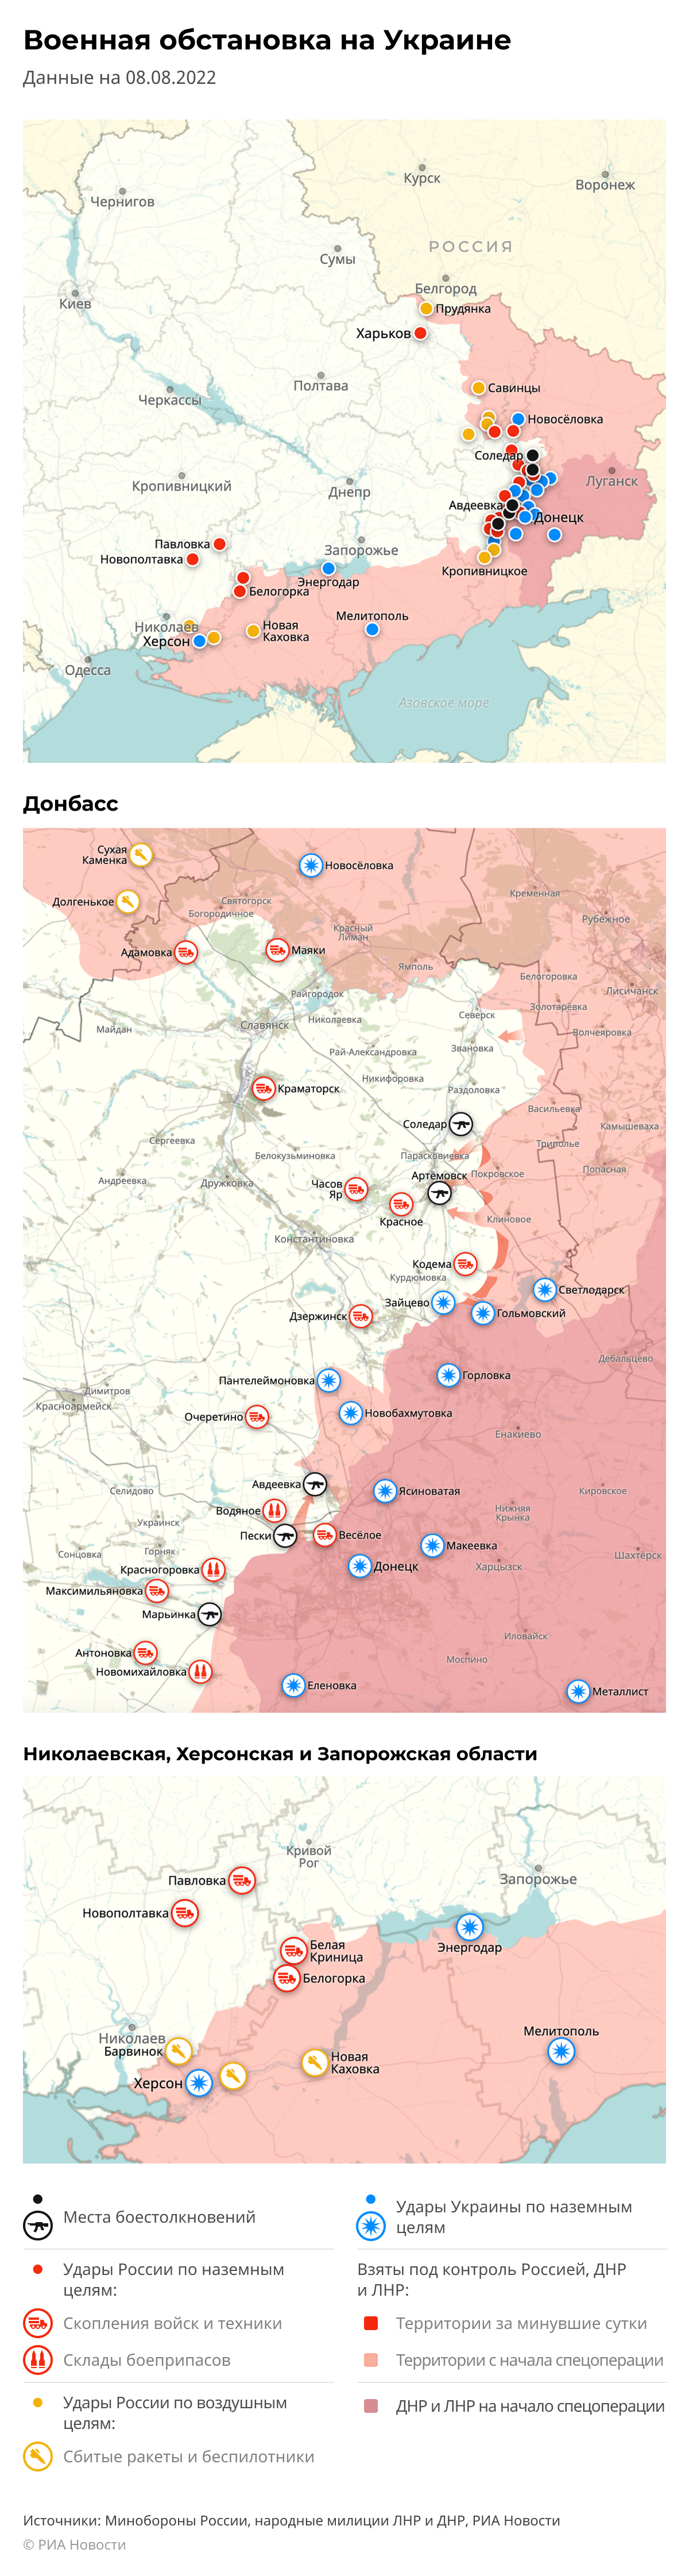 Карта спецоперации Вооруженных сил России на Украине на 08.08.2022